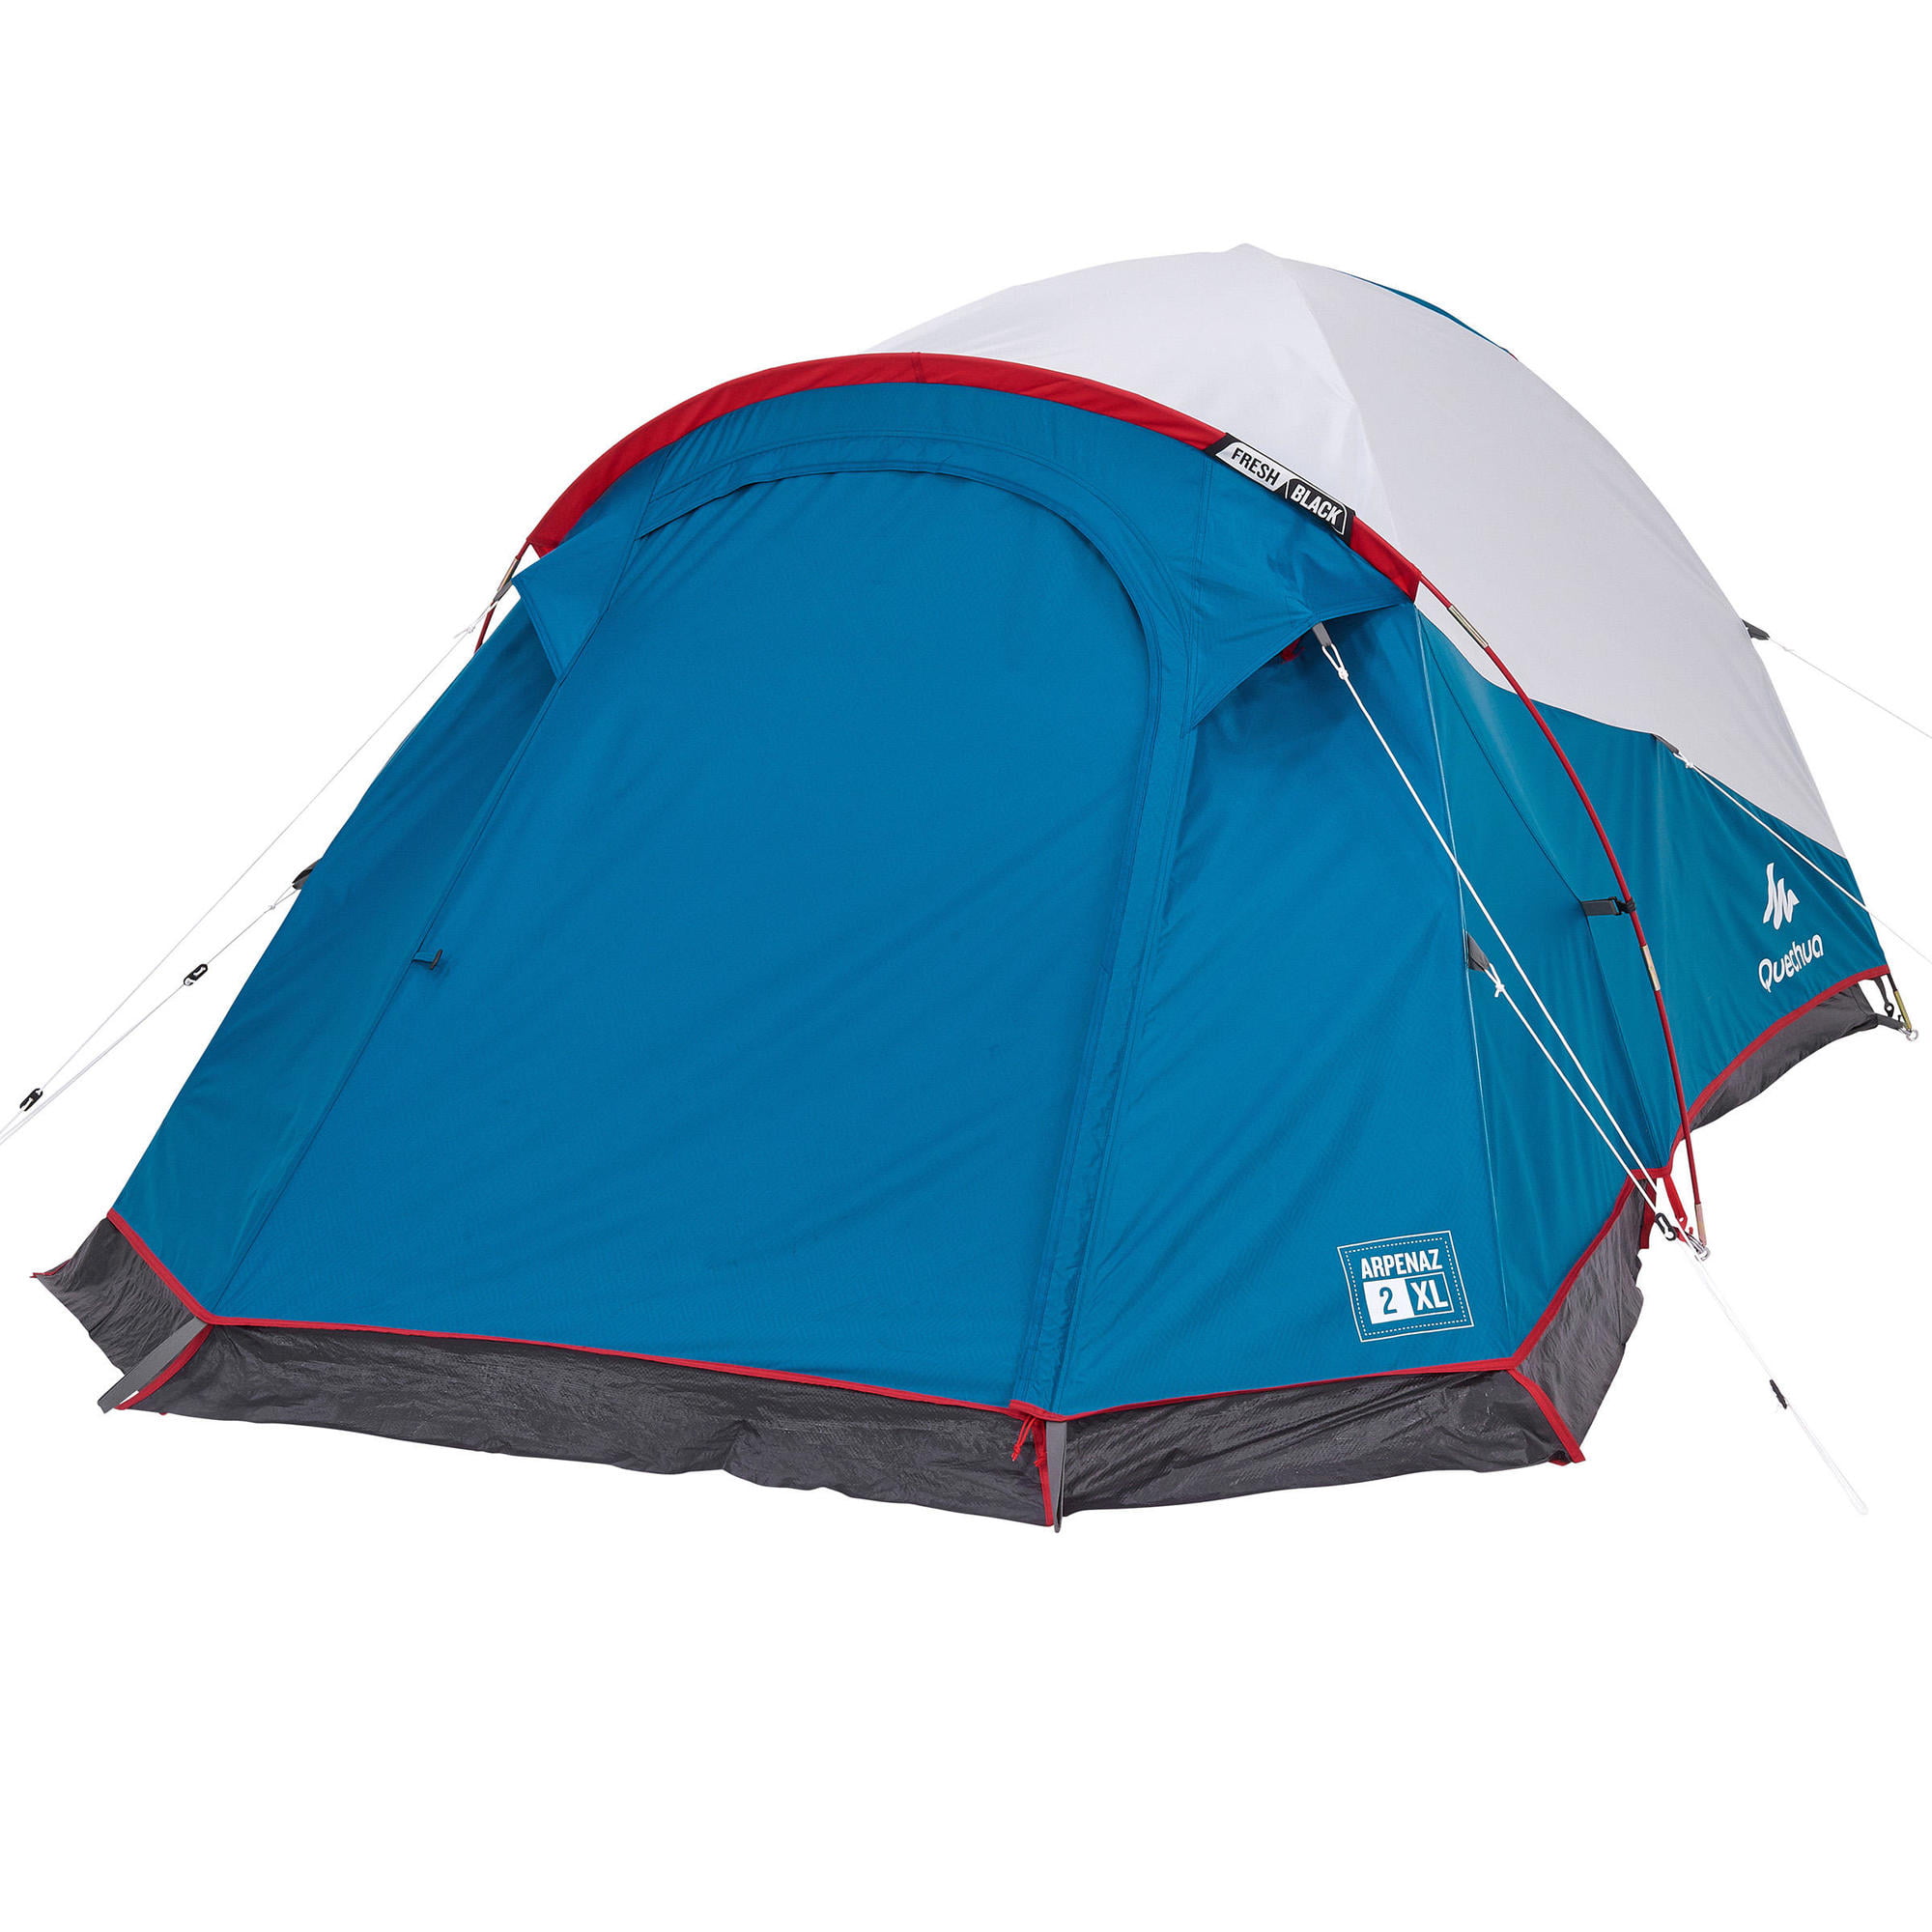 Decathlon Quechua Arpenaz 2xl Fresh Amp Black Waterproof Camping Tent 2 Person Walmart Com Walmart Com